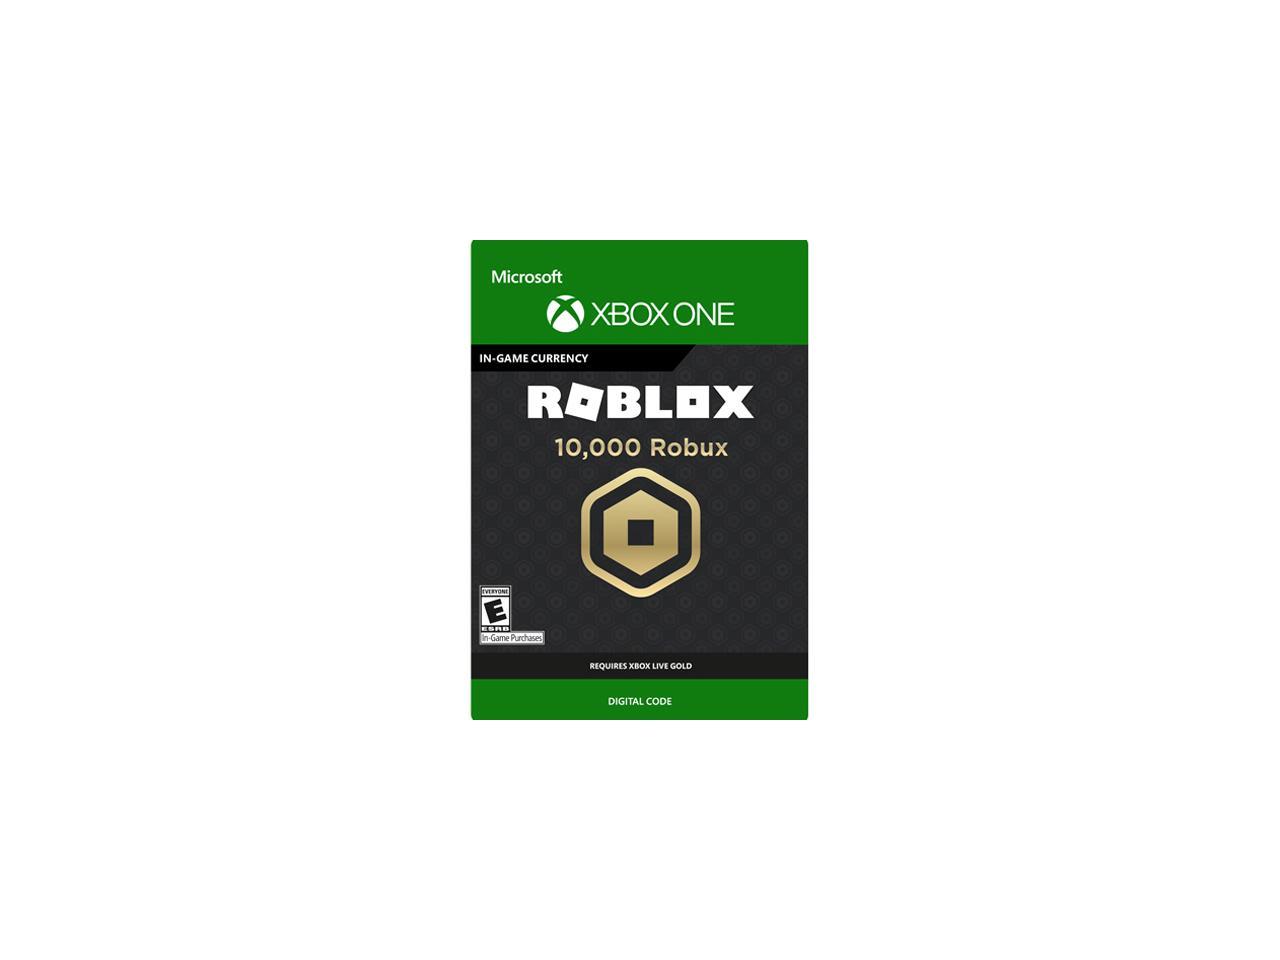 10 000 Robux For Xbox One Digital Code Newegg Com - 10 000 robux for xbox one digital code newegg com